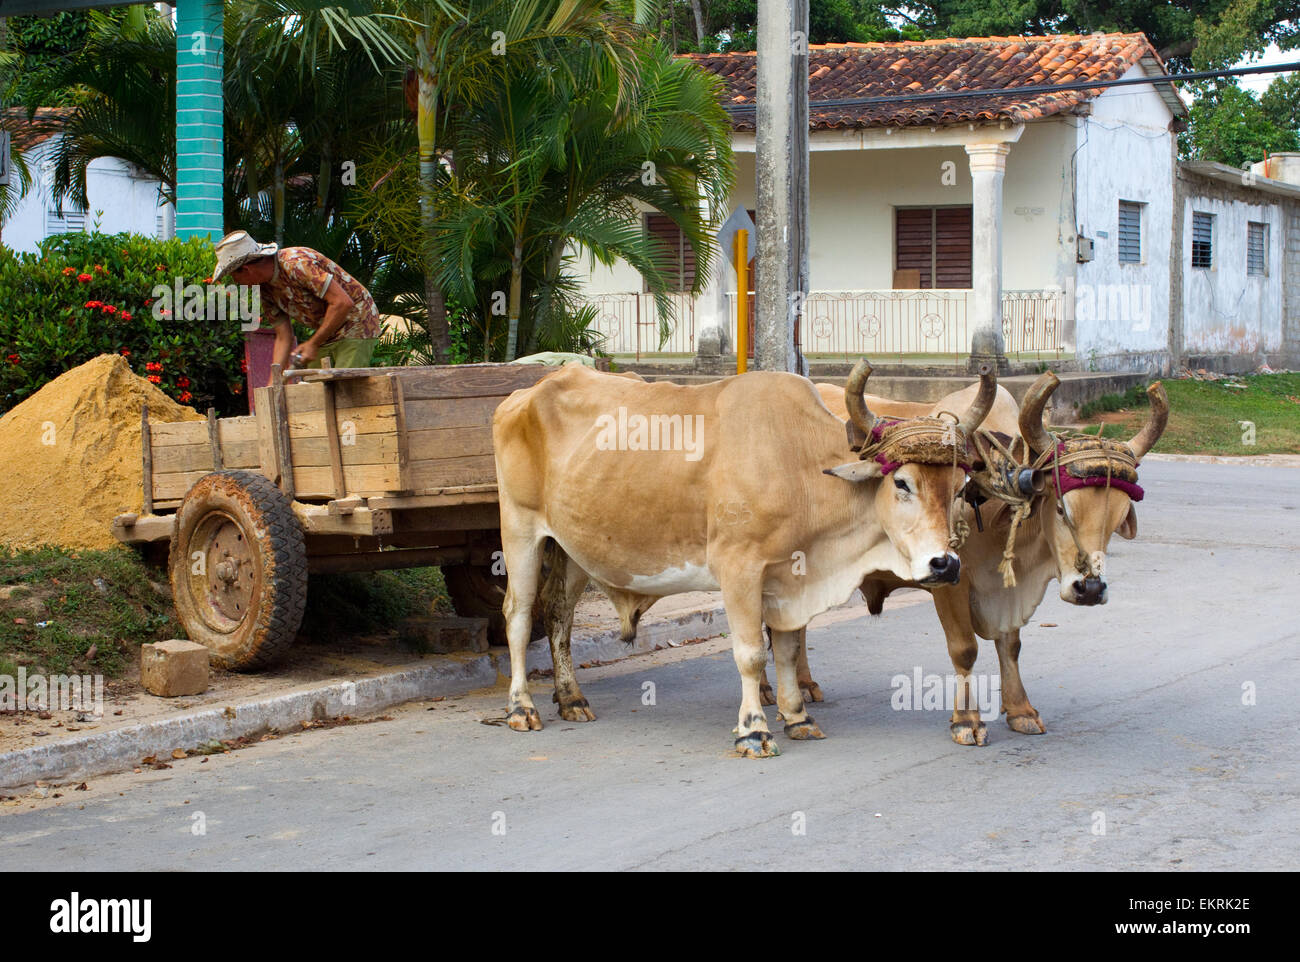 Déchargement de sable Workman chariot tiré par des bœufs dans la région de Vinales, Cuba Banque D'Images